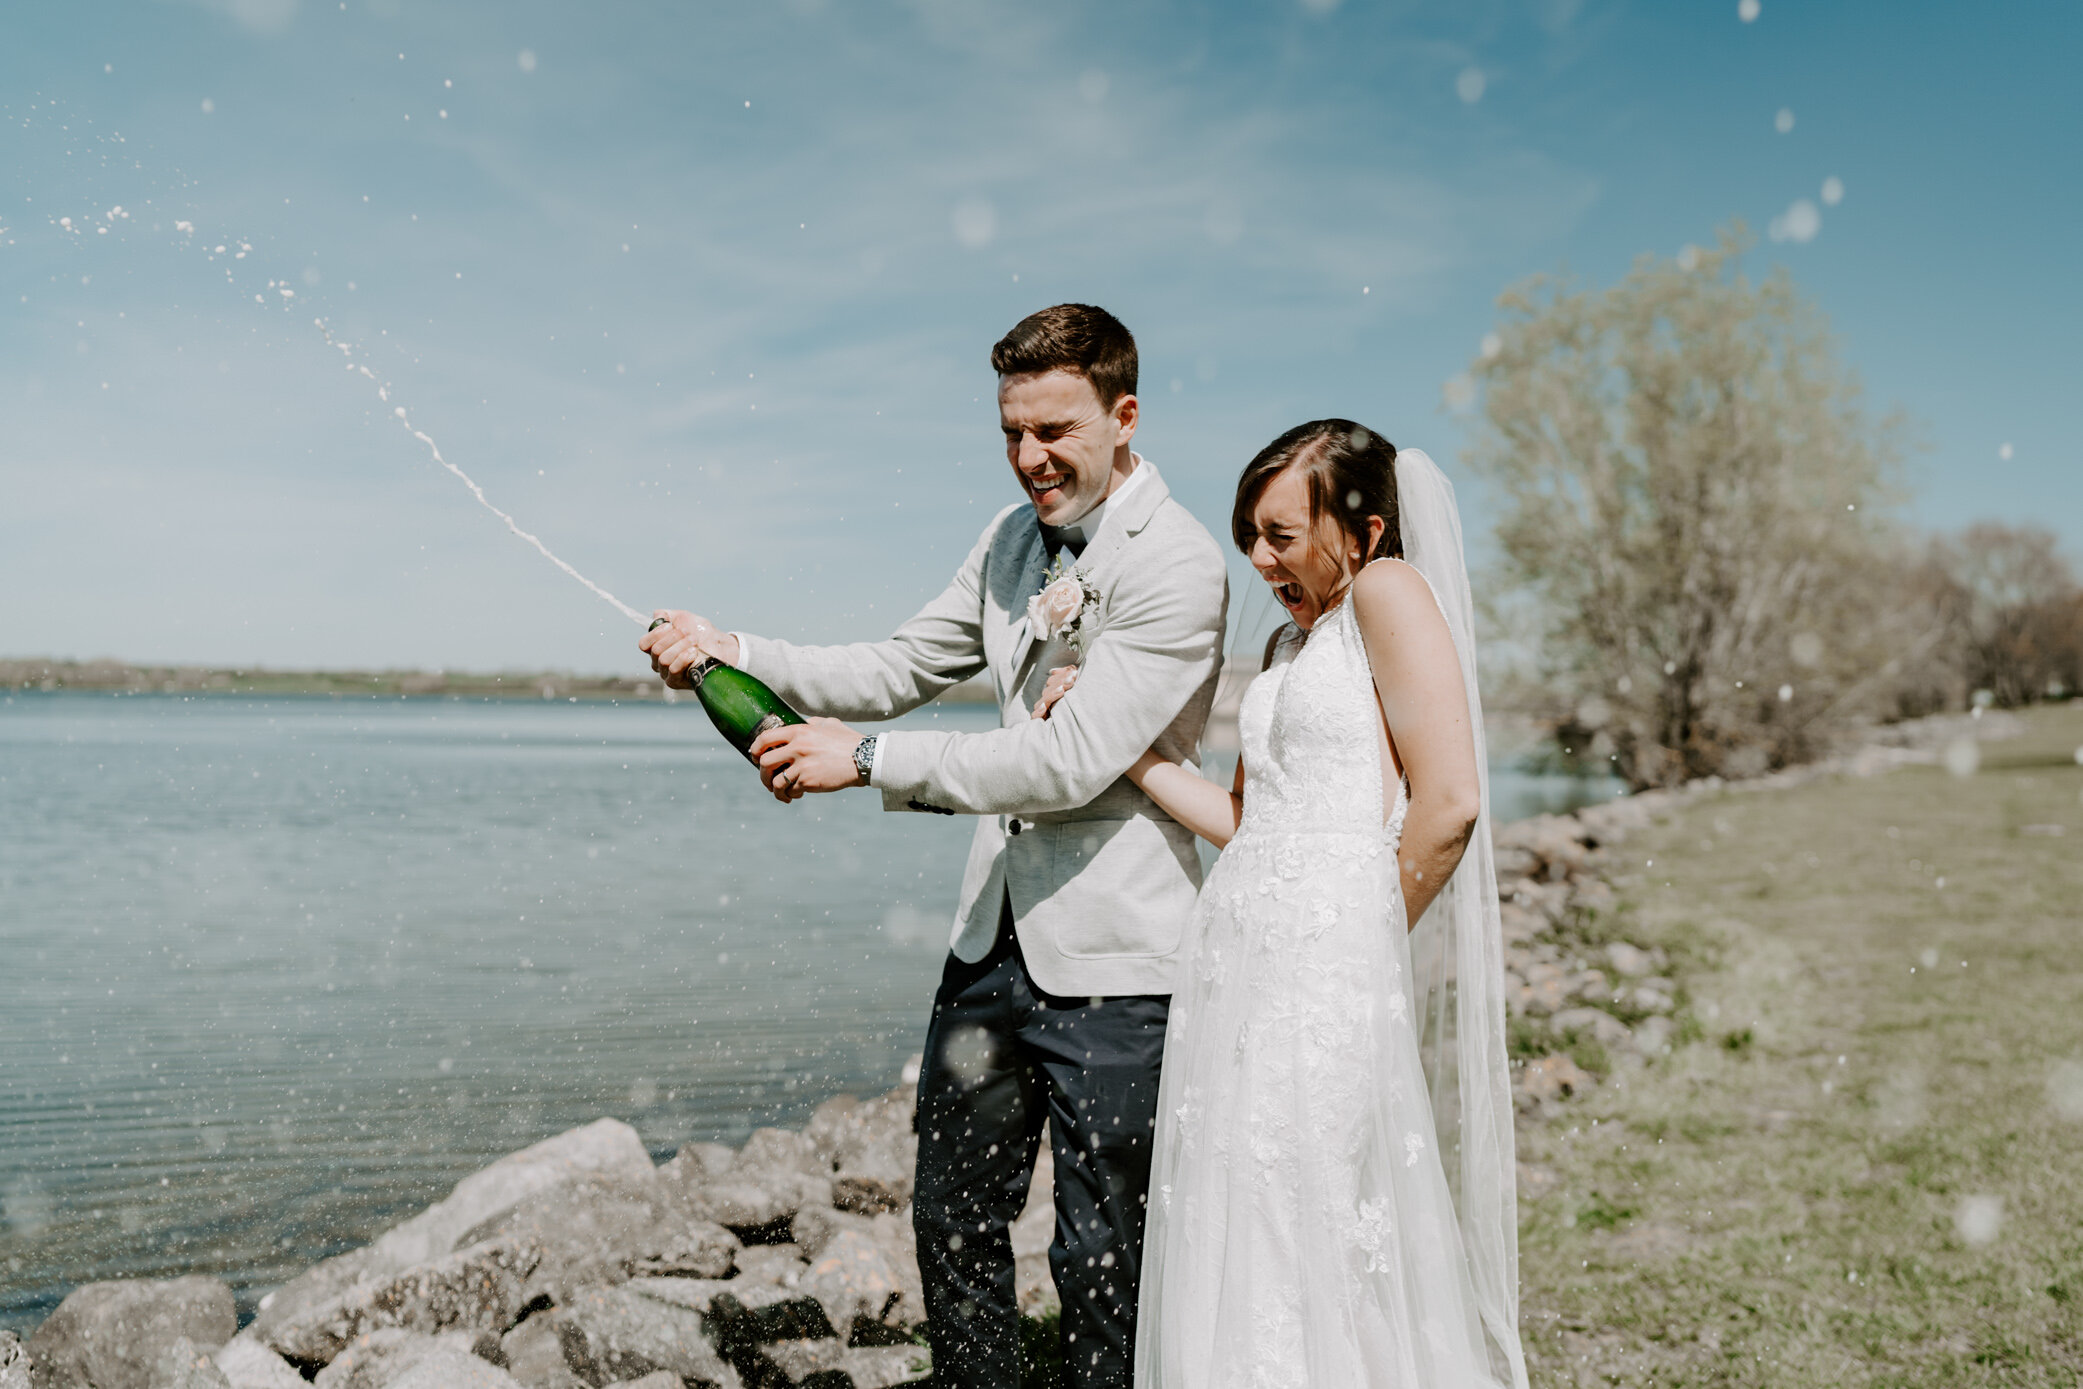 Wedding confetti alternative wedding champagne spray